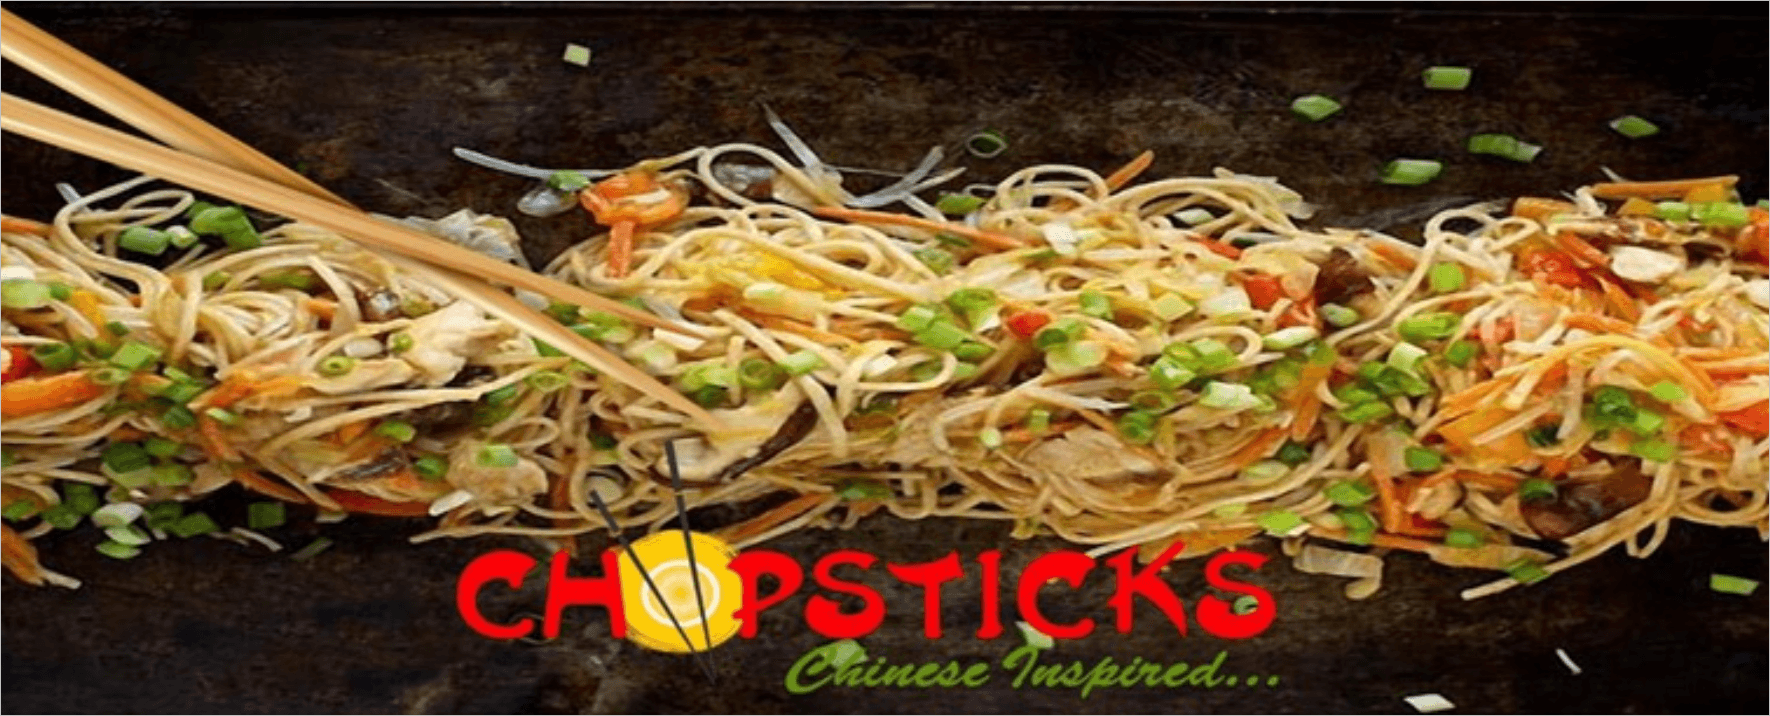 ChopSticks in St Kitts